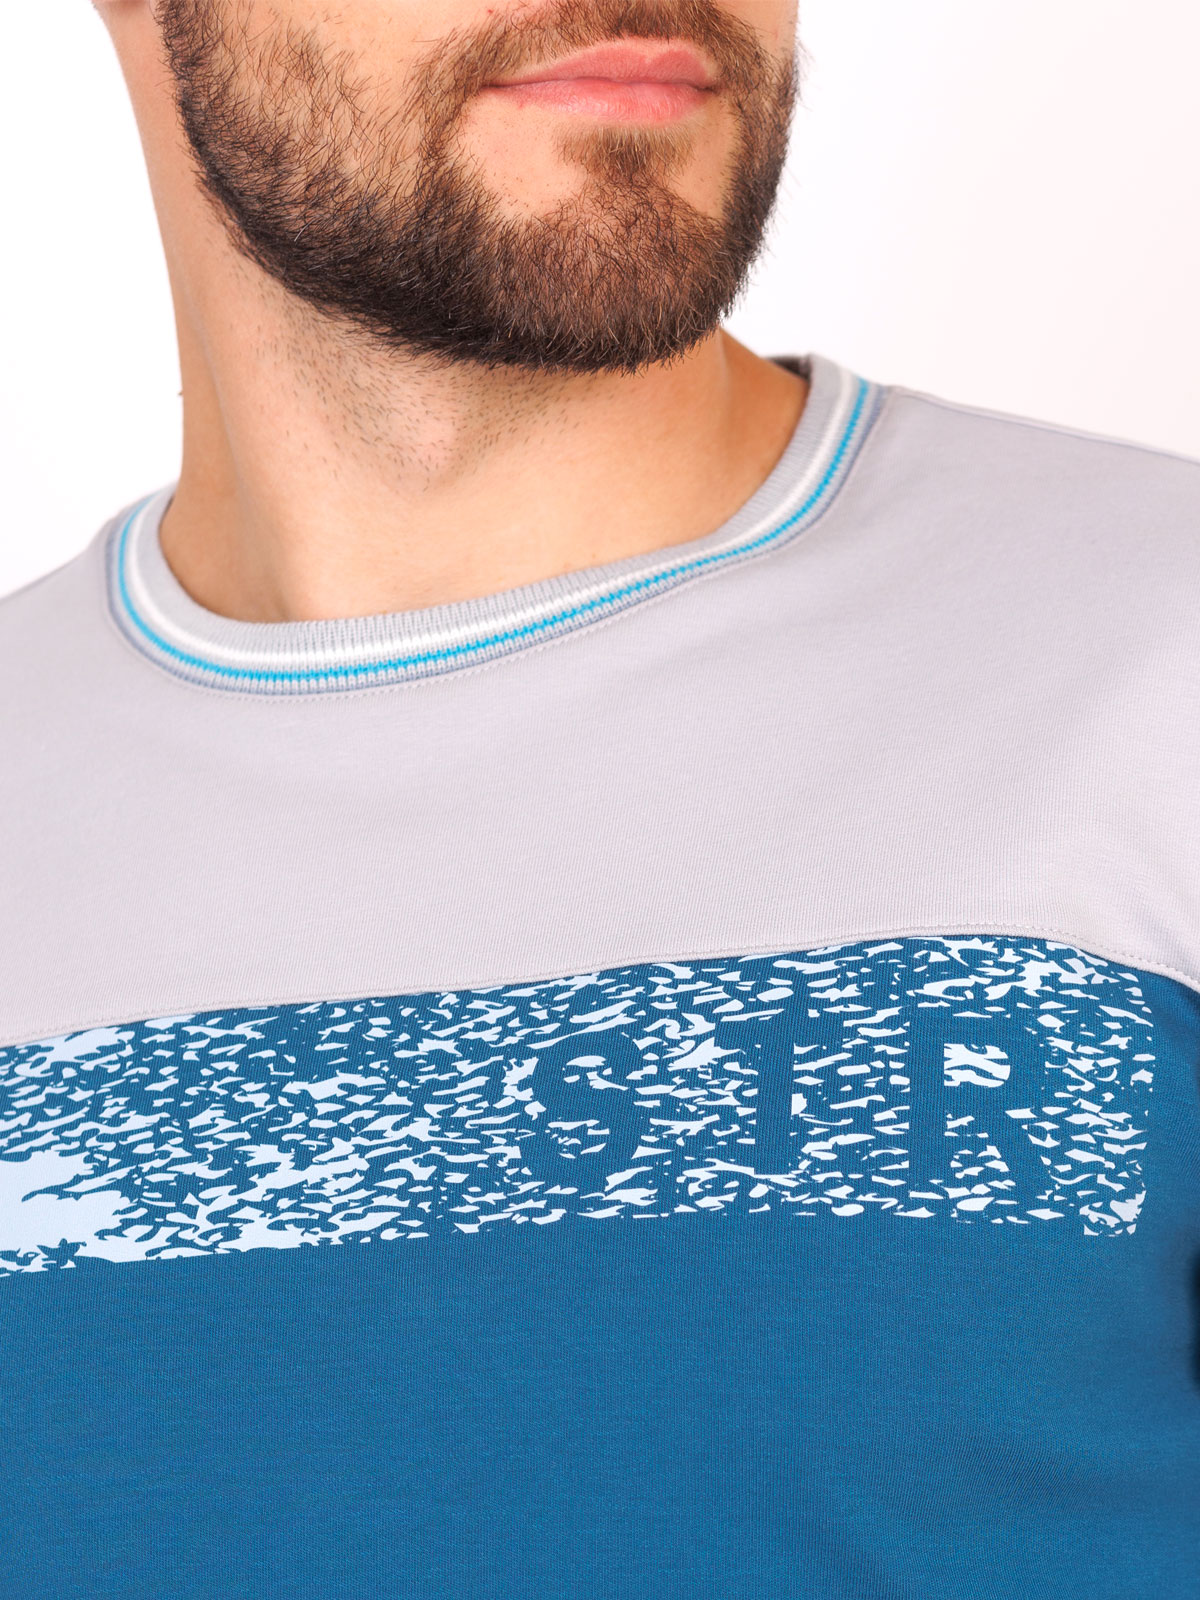 Ανδρική μπλούζα σε μπλε και γκρι - 42351 € 27.56 img3